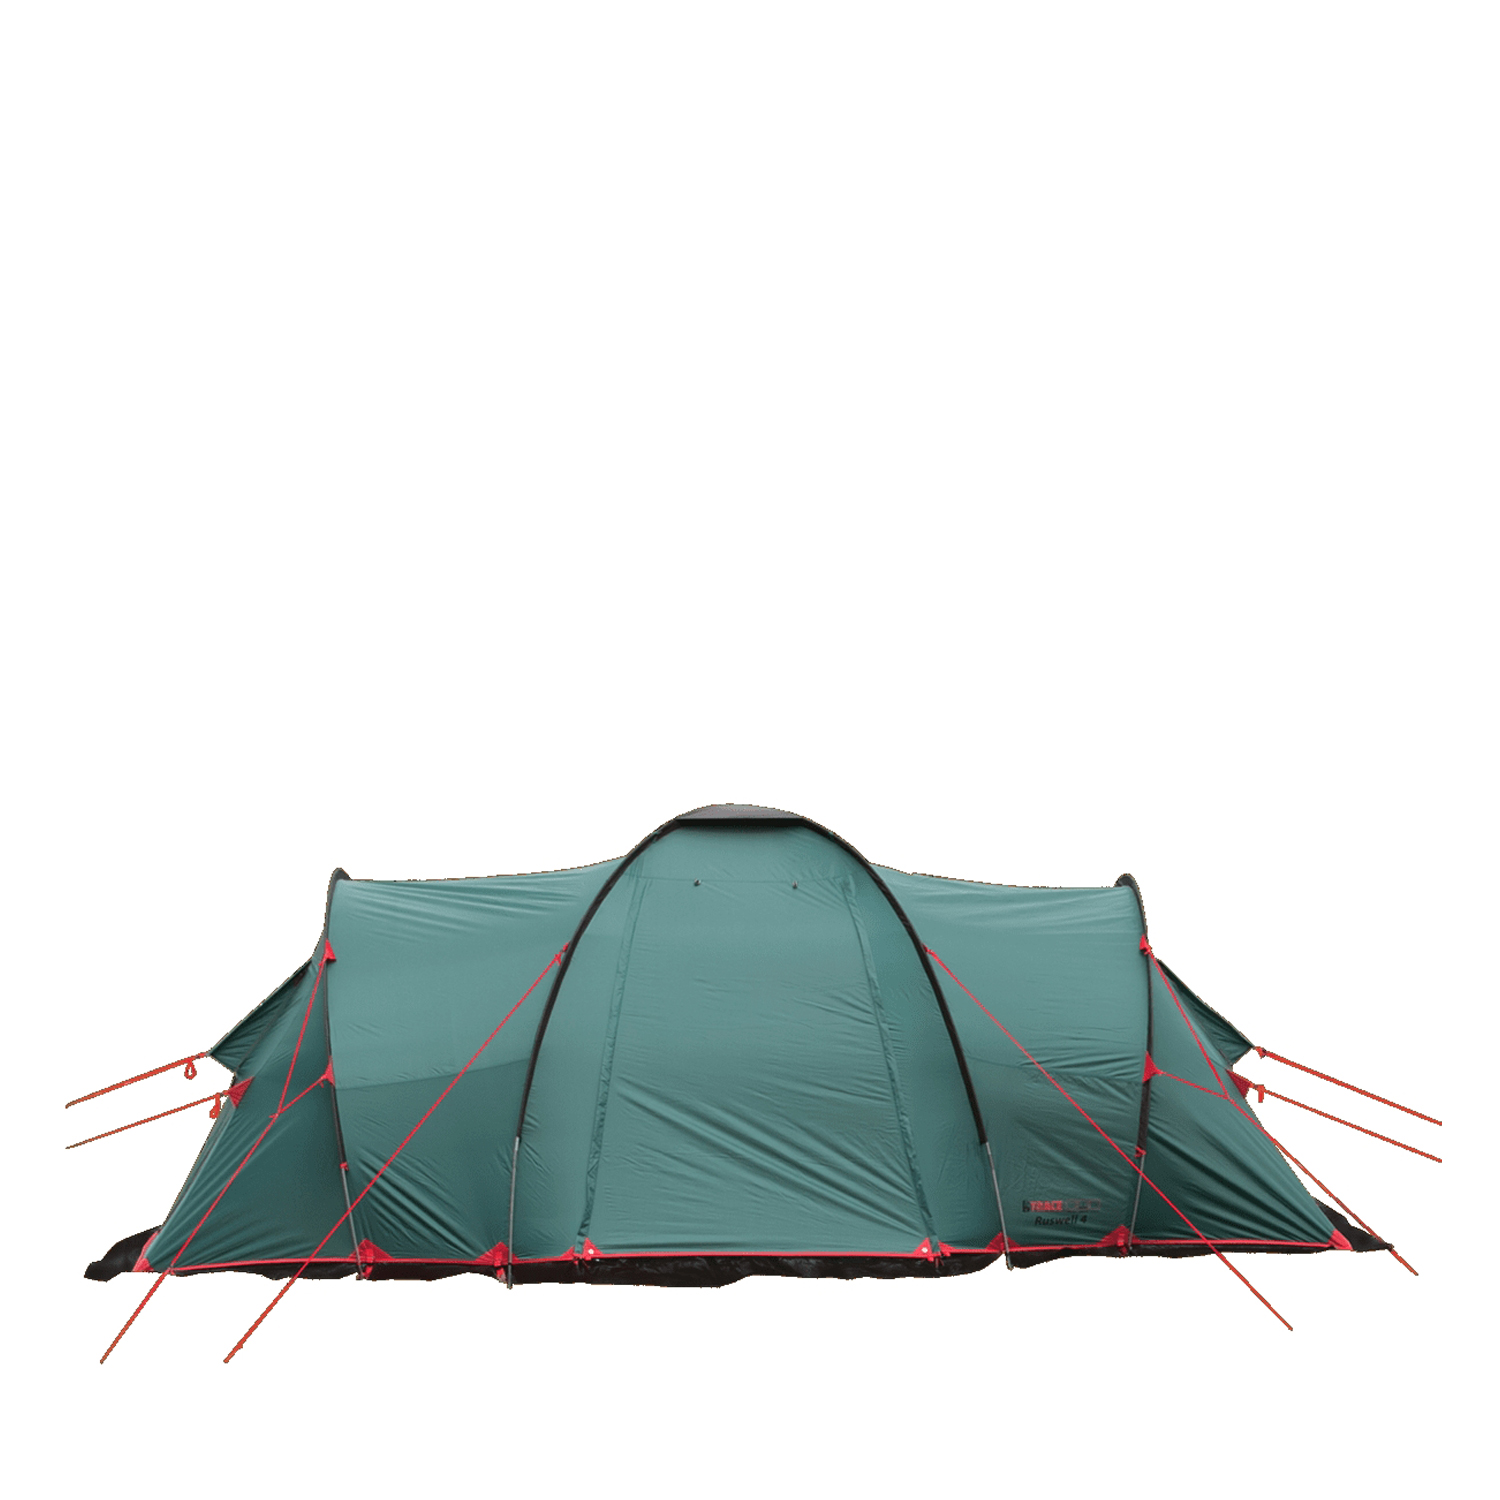 Палатка BTrace Ruswell 6 зеленый